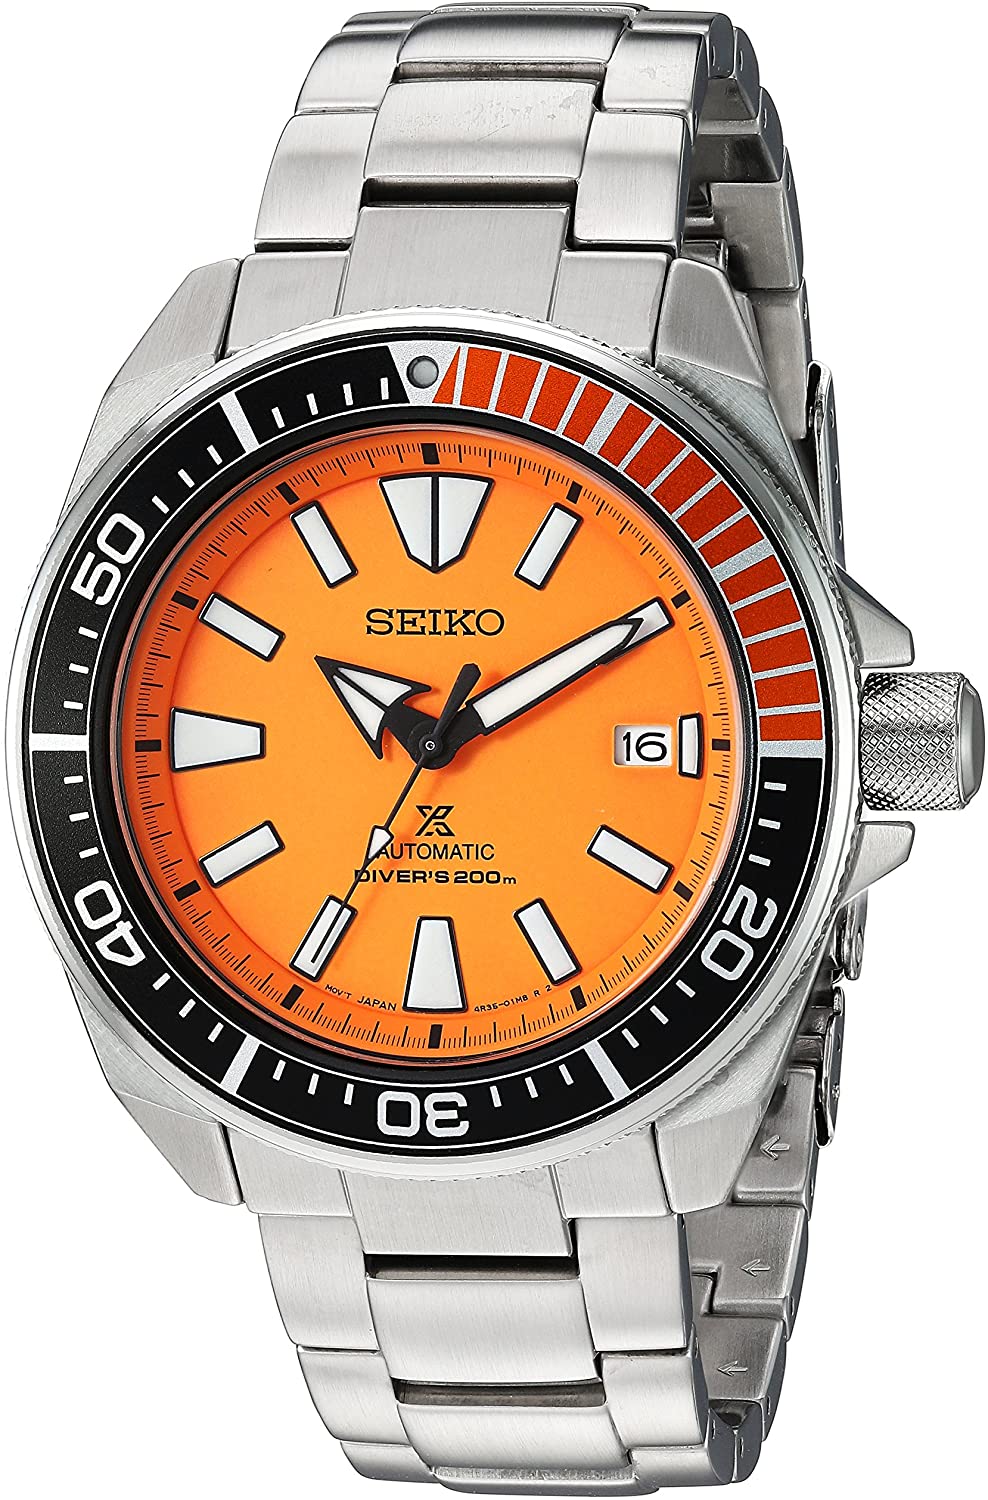 Đồng hồ Seiko cổ sẵn sàng (SEIKO SRPC07 Watch) Seiko SRPC07 Prospex Analog  Display Automatic Self Wind Silver Watch [Hộp & Sách hướng dẫn của Nhà sản  xuất + Người bán bảo